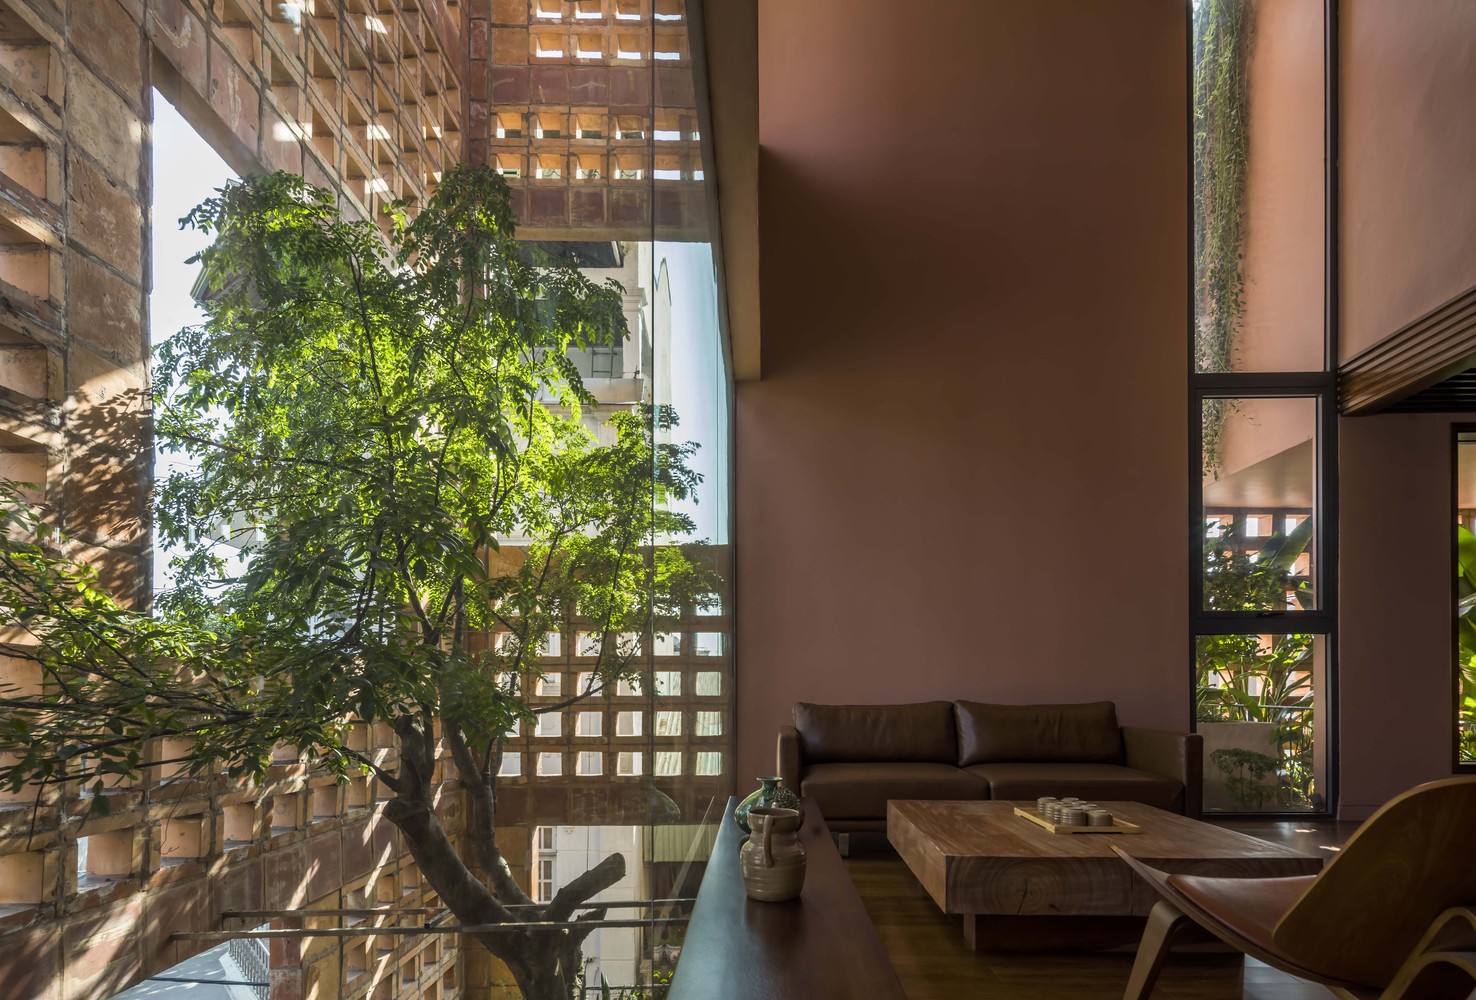 hình ảnh phòng khách trong nhà gạch gốm ngập tràn ánh sáng tự nhiên chiếu xuyên qua lớp tường gạch gốm, cây xanh trồng ở giếng trời